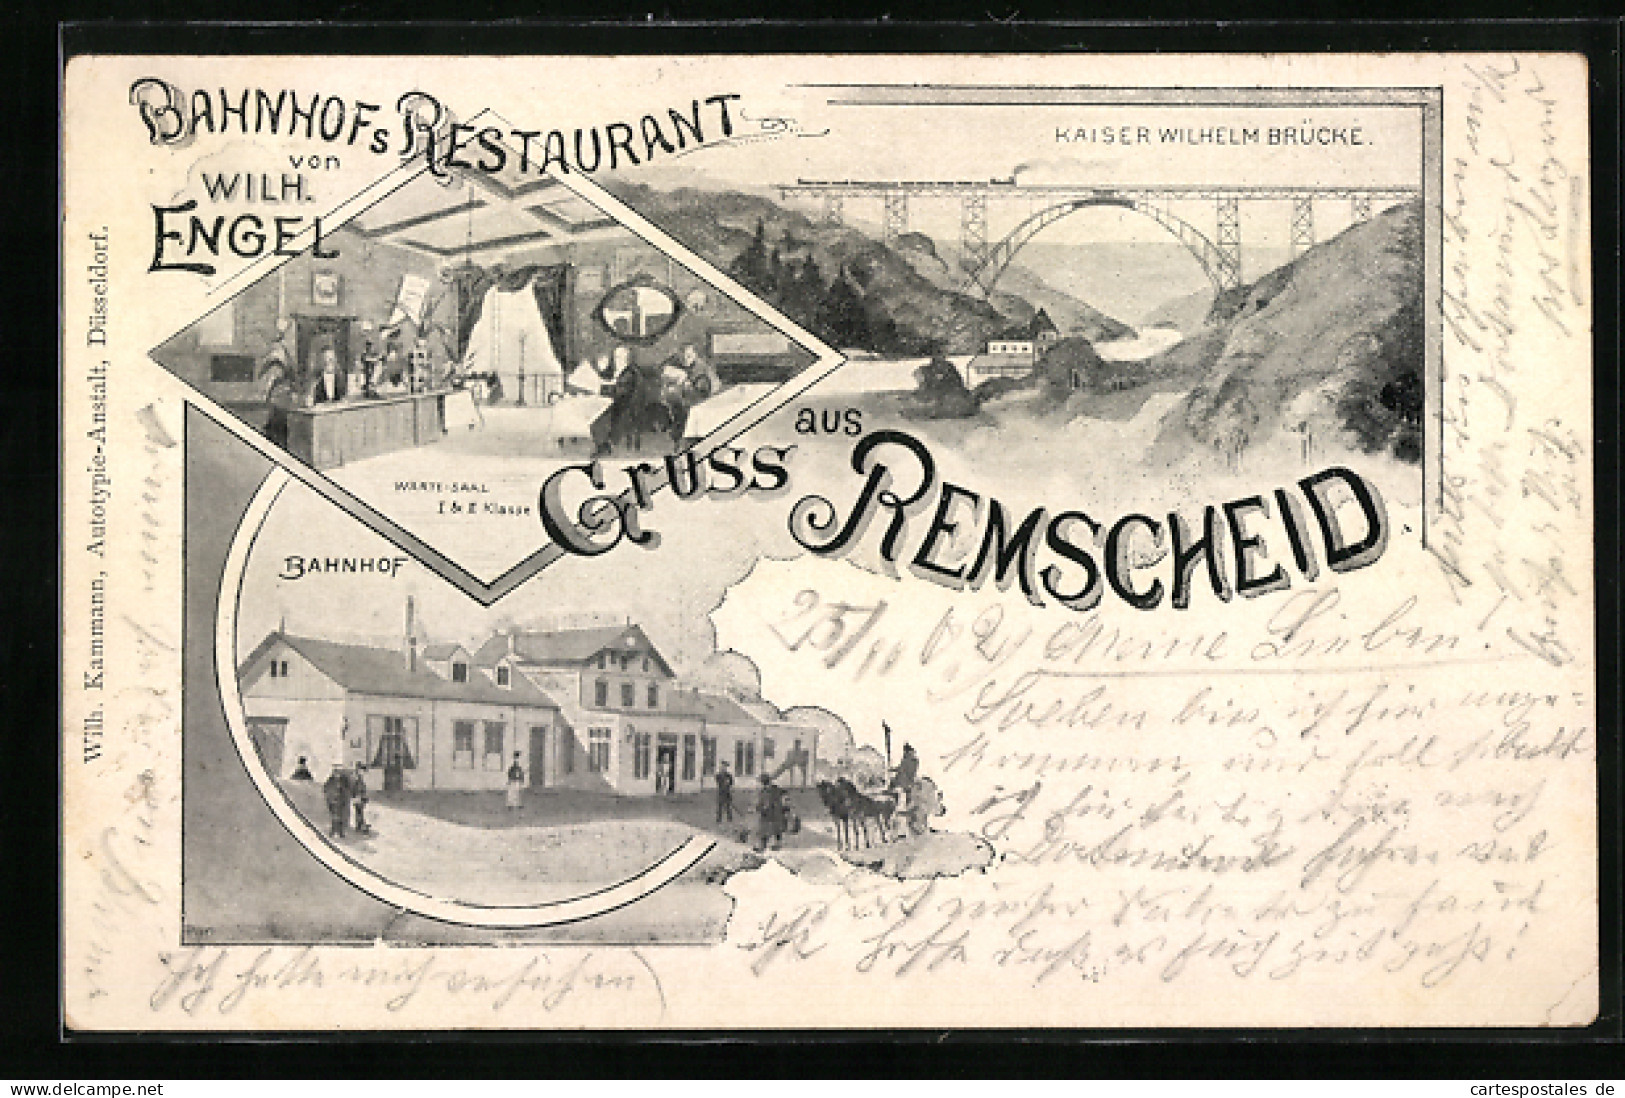 AK Remscheid, Bahnhofs Restaurant Von Wilh. Engel, Kaiser Wilhelm Brücke, Bahnhof  - Remscheid